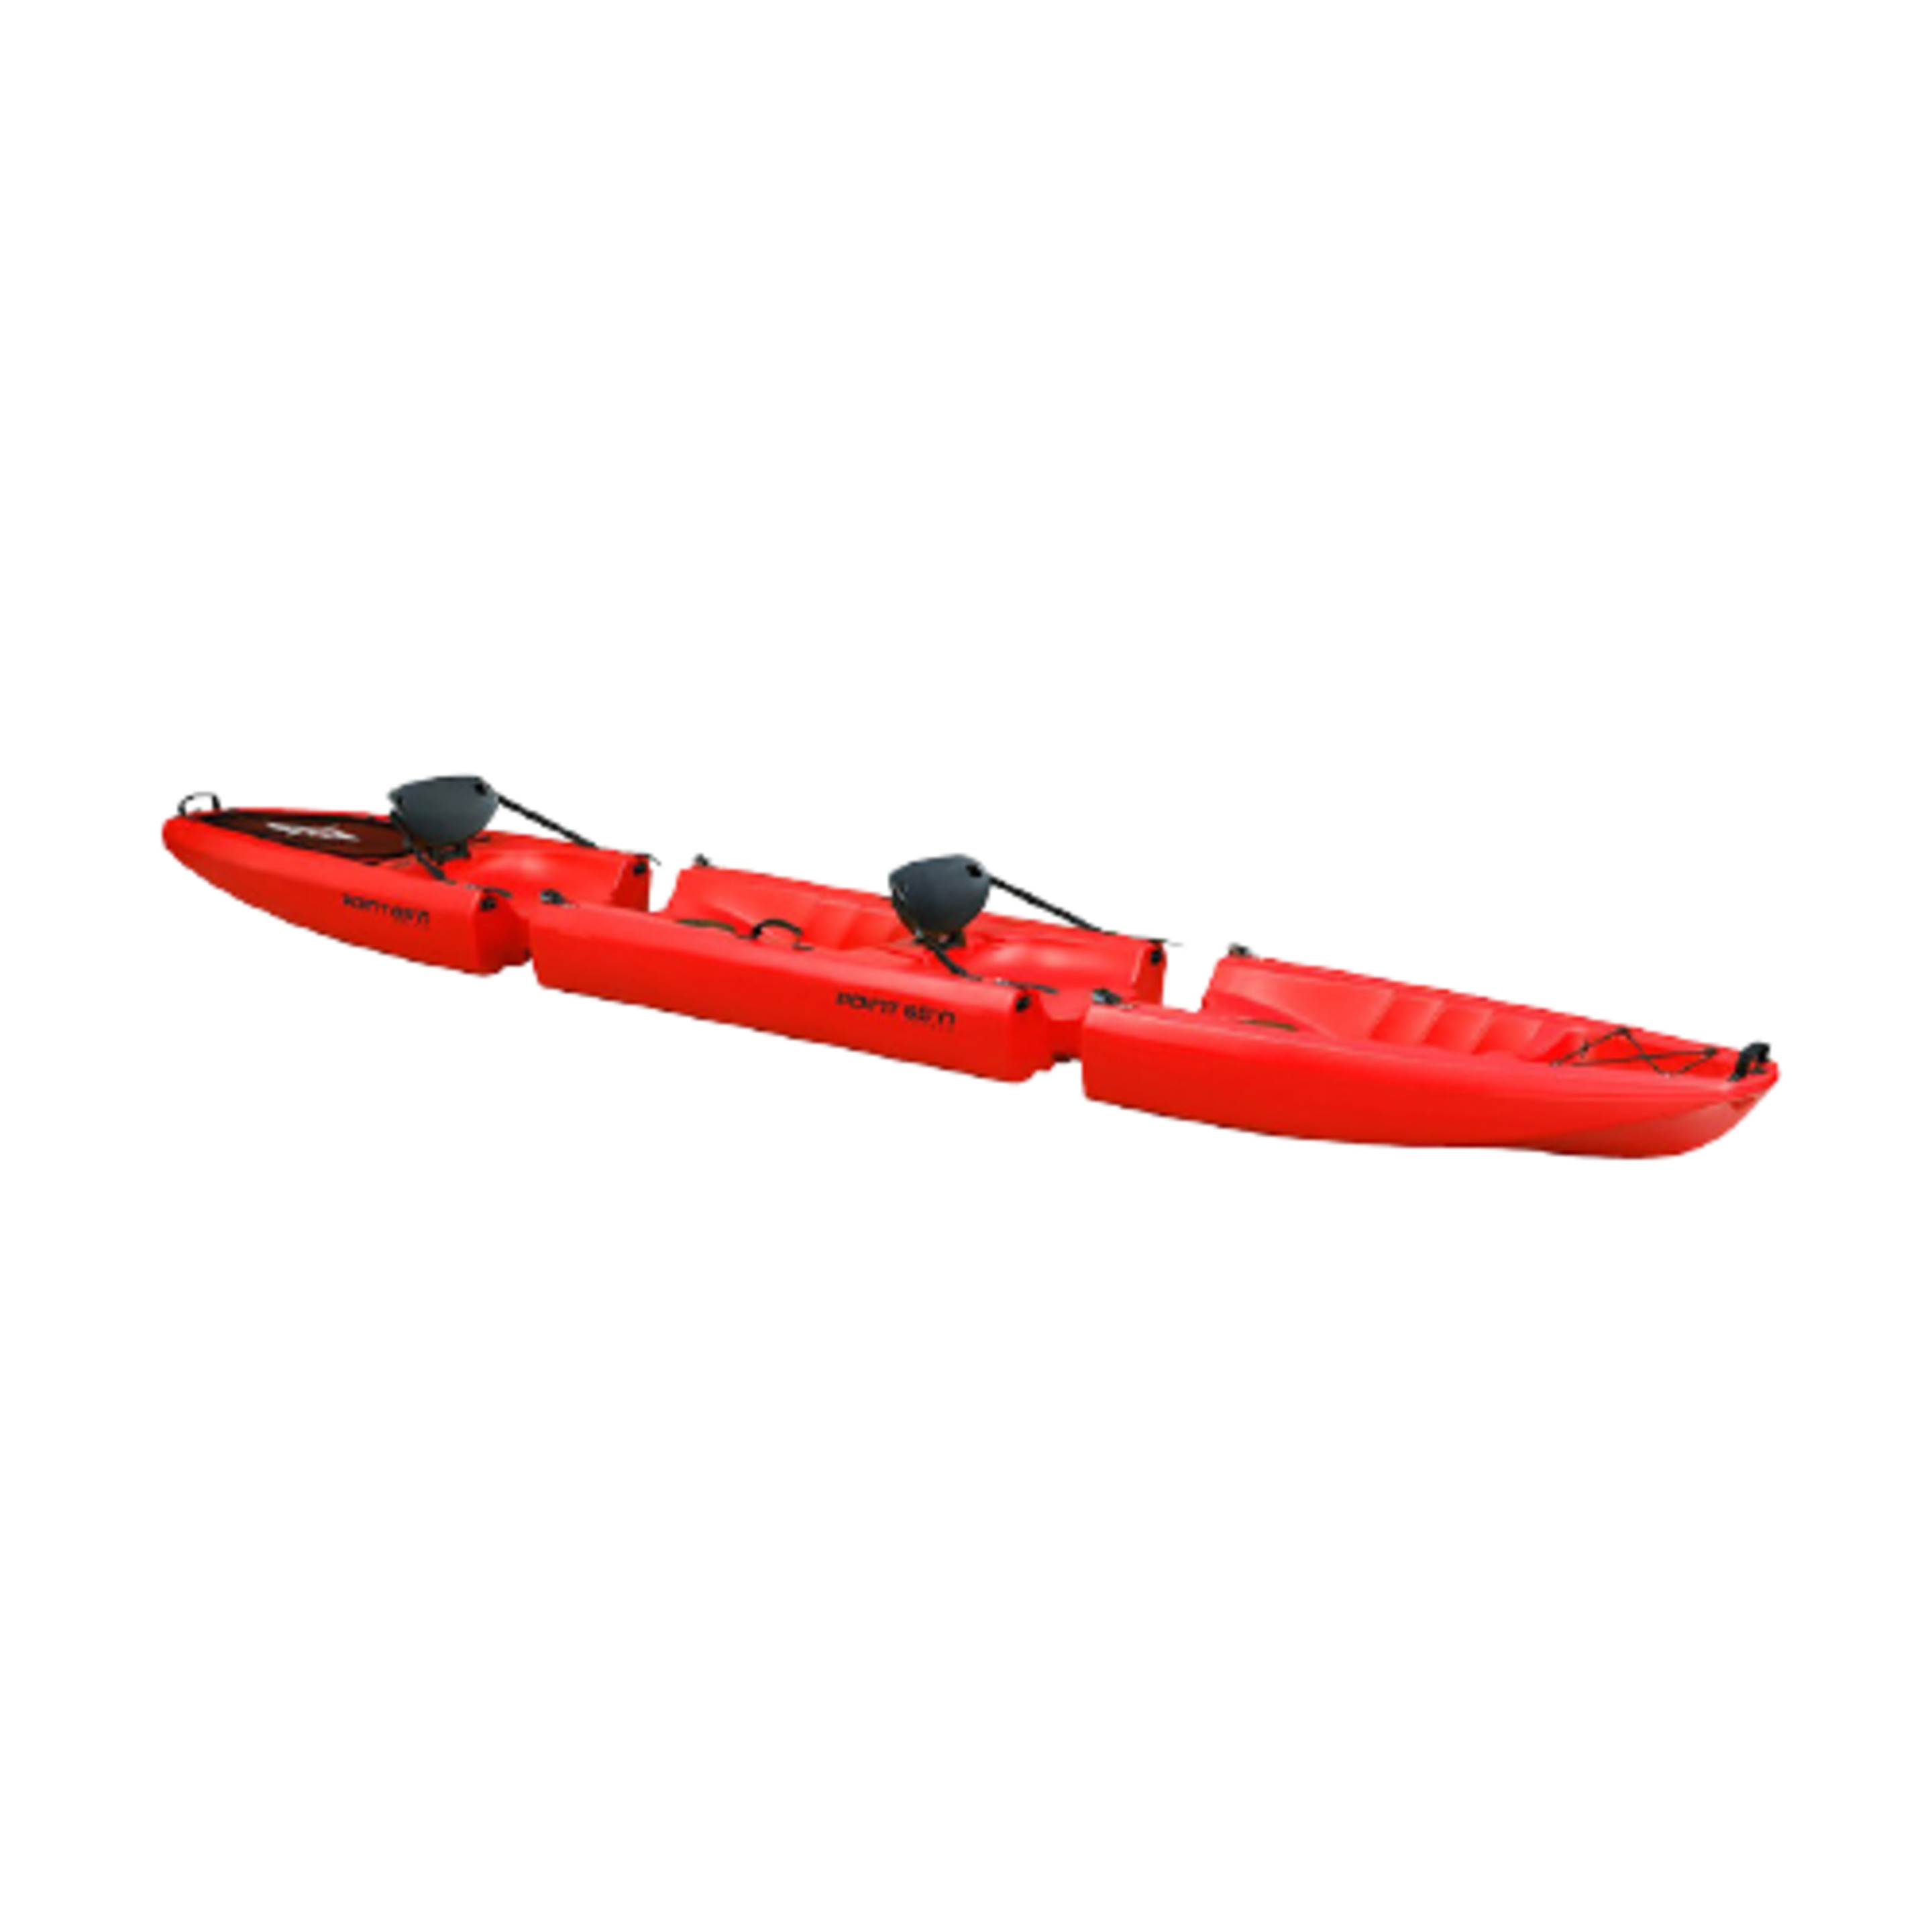 Kayak Modular Point 65 Falcon Tandem - Kayak 2 plazas  MKP